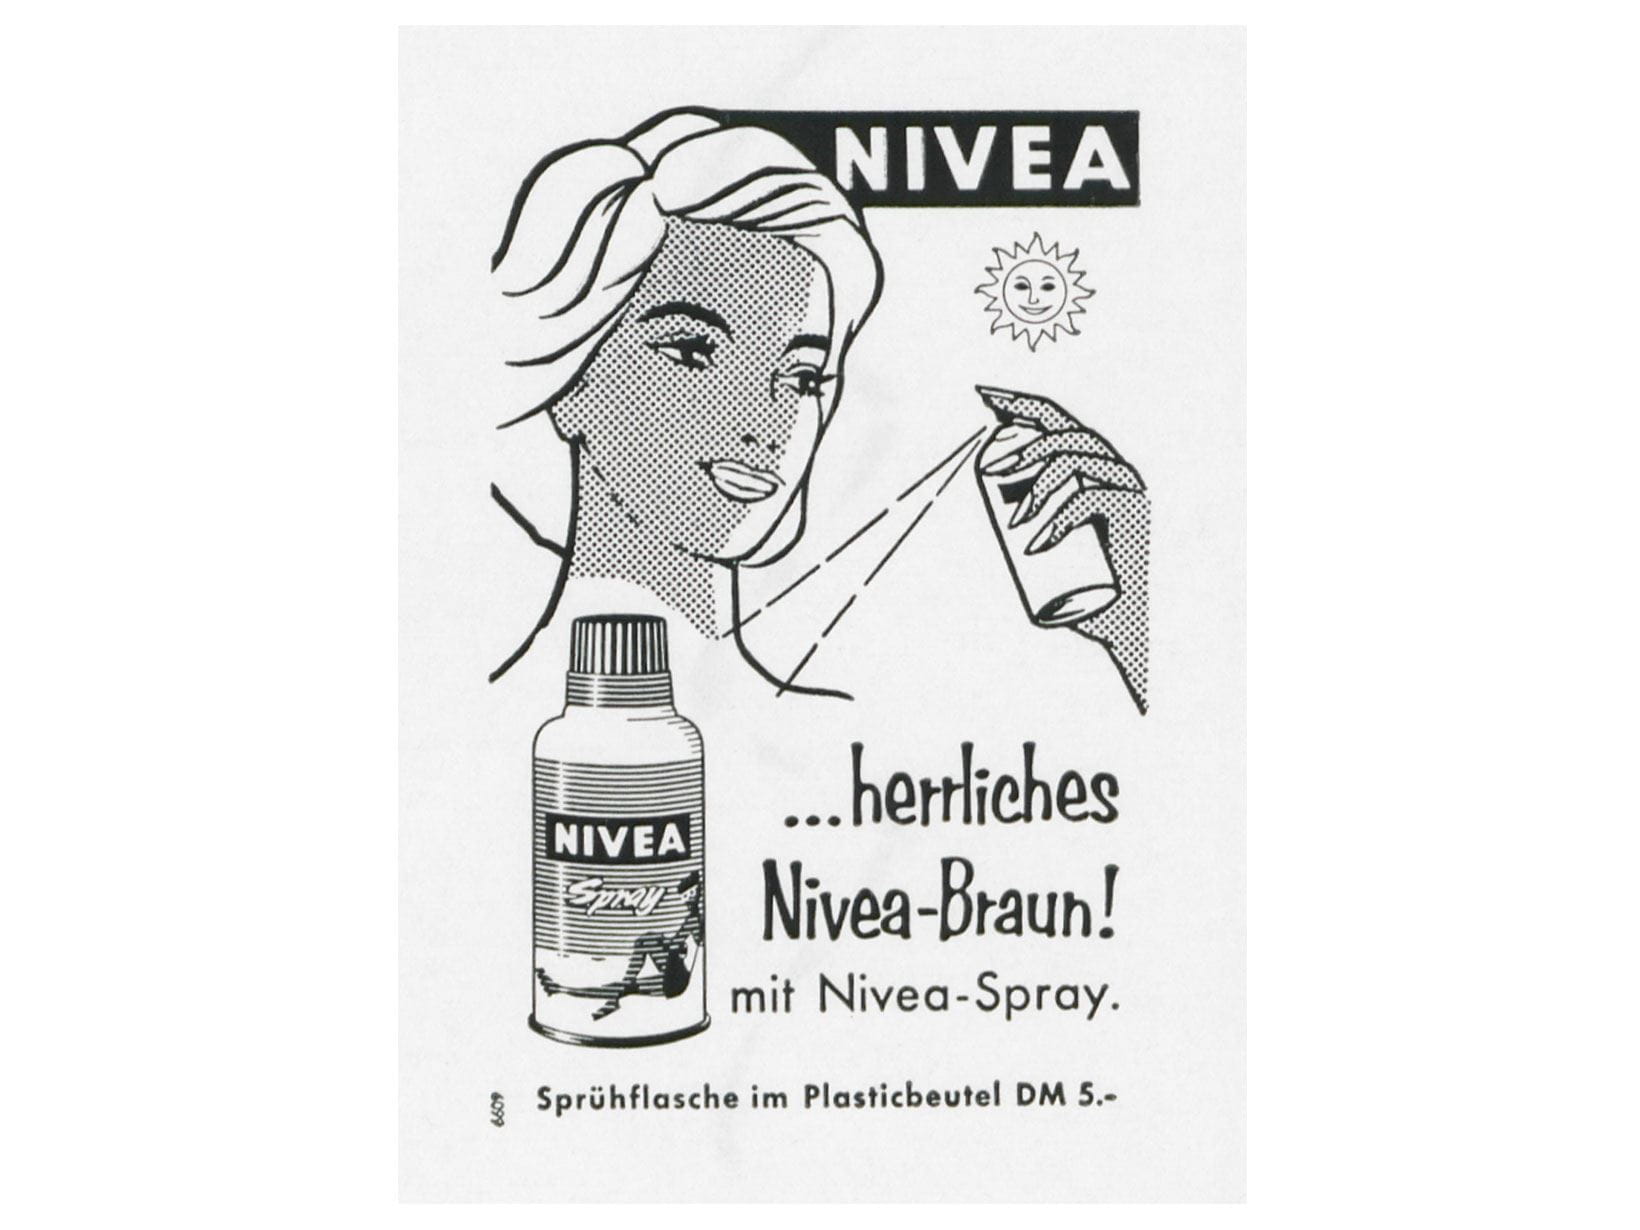 NIVEA Spray Werbeanzeige von 1959: ... herrliches Nivea-Braun! mit Nivea-Spray.